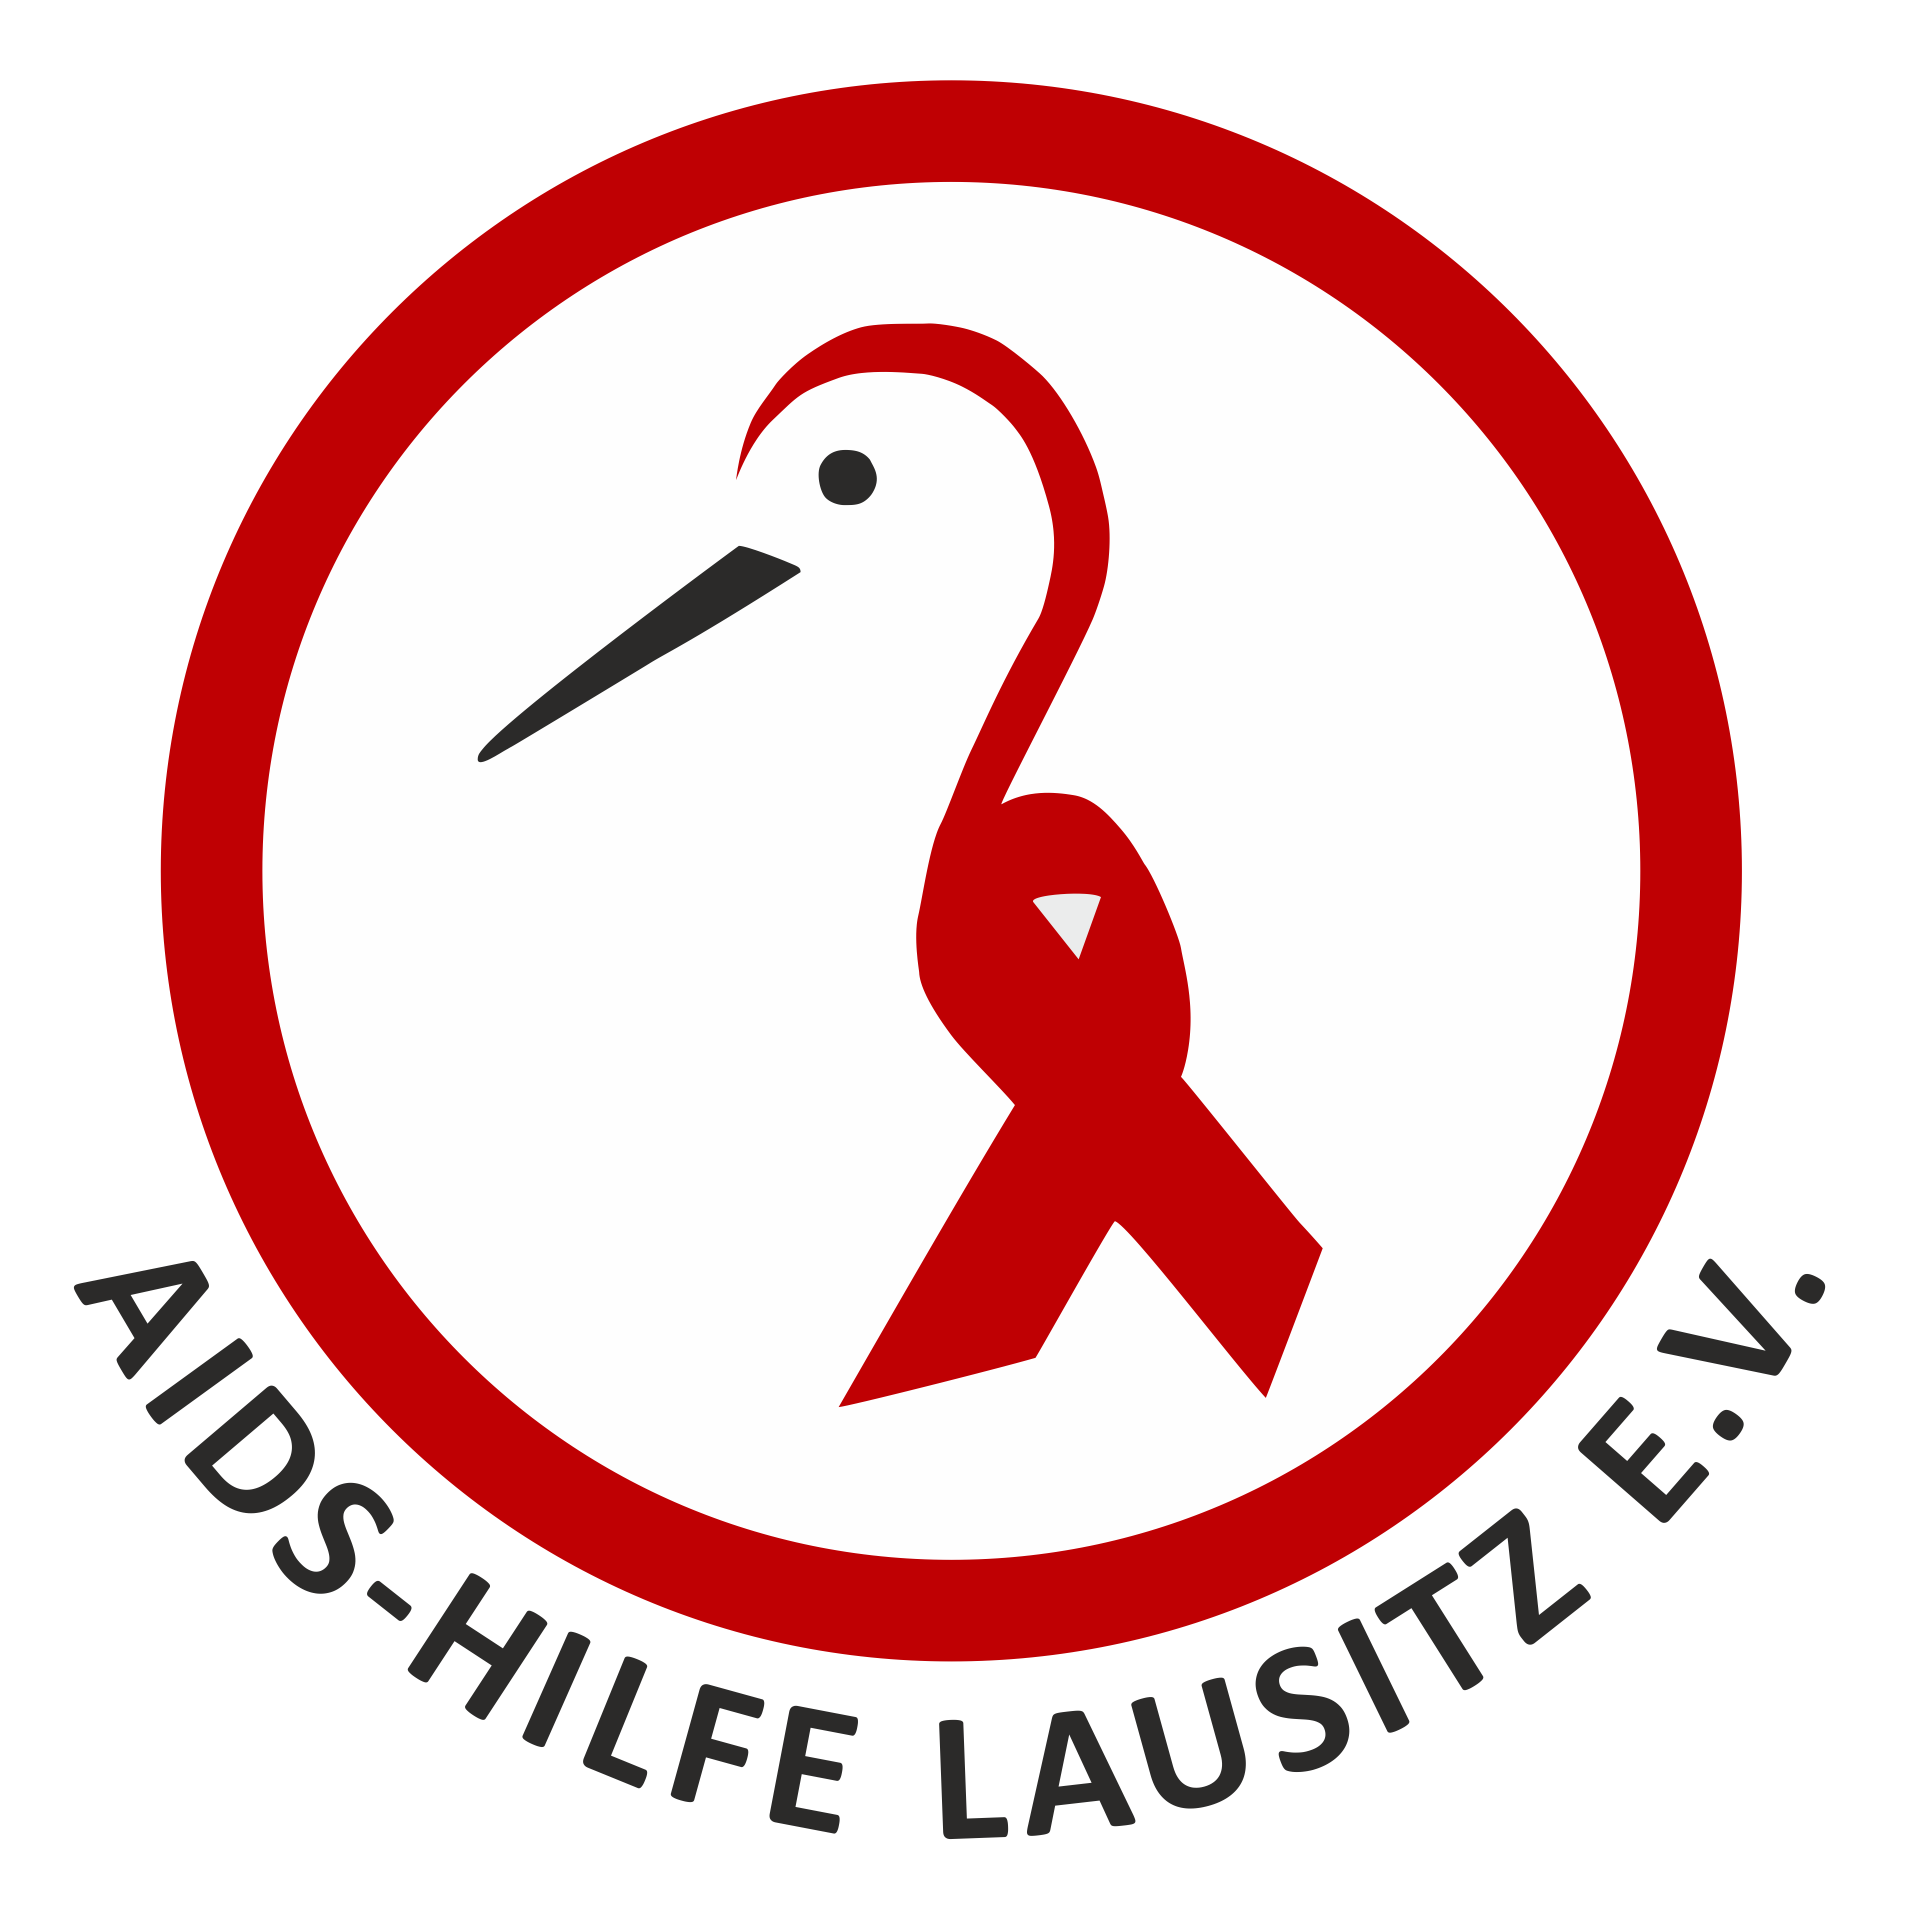 AIDS-Hilfe Lausitz e.V. | www.aids-hilfe-lausitz.de